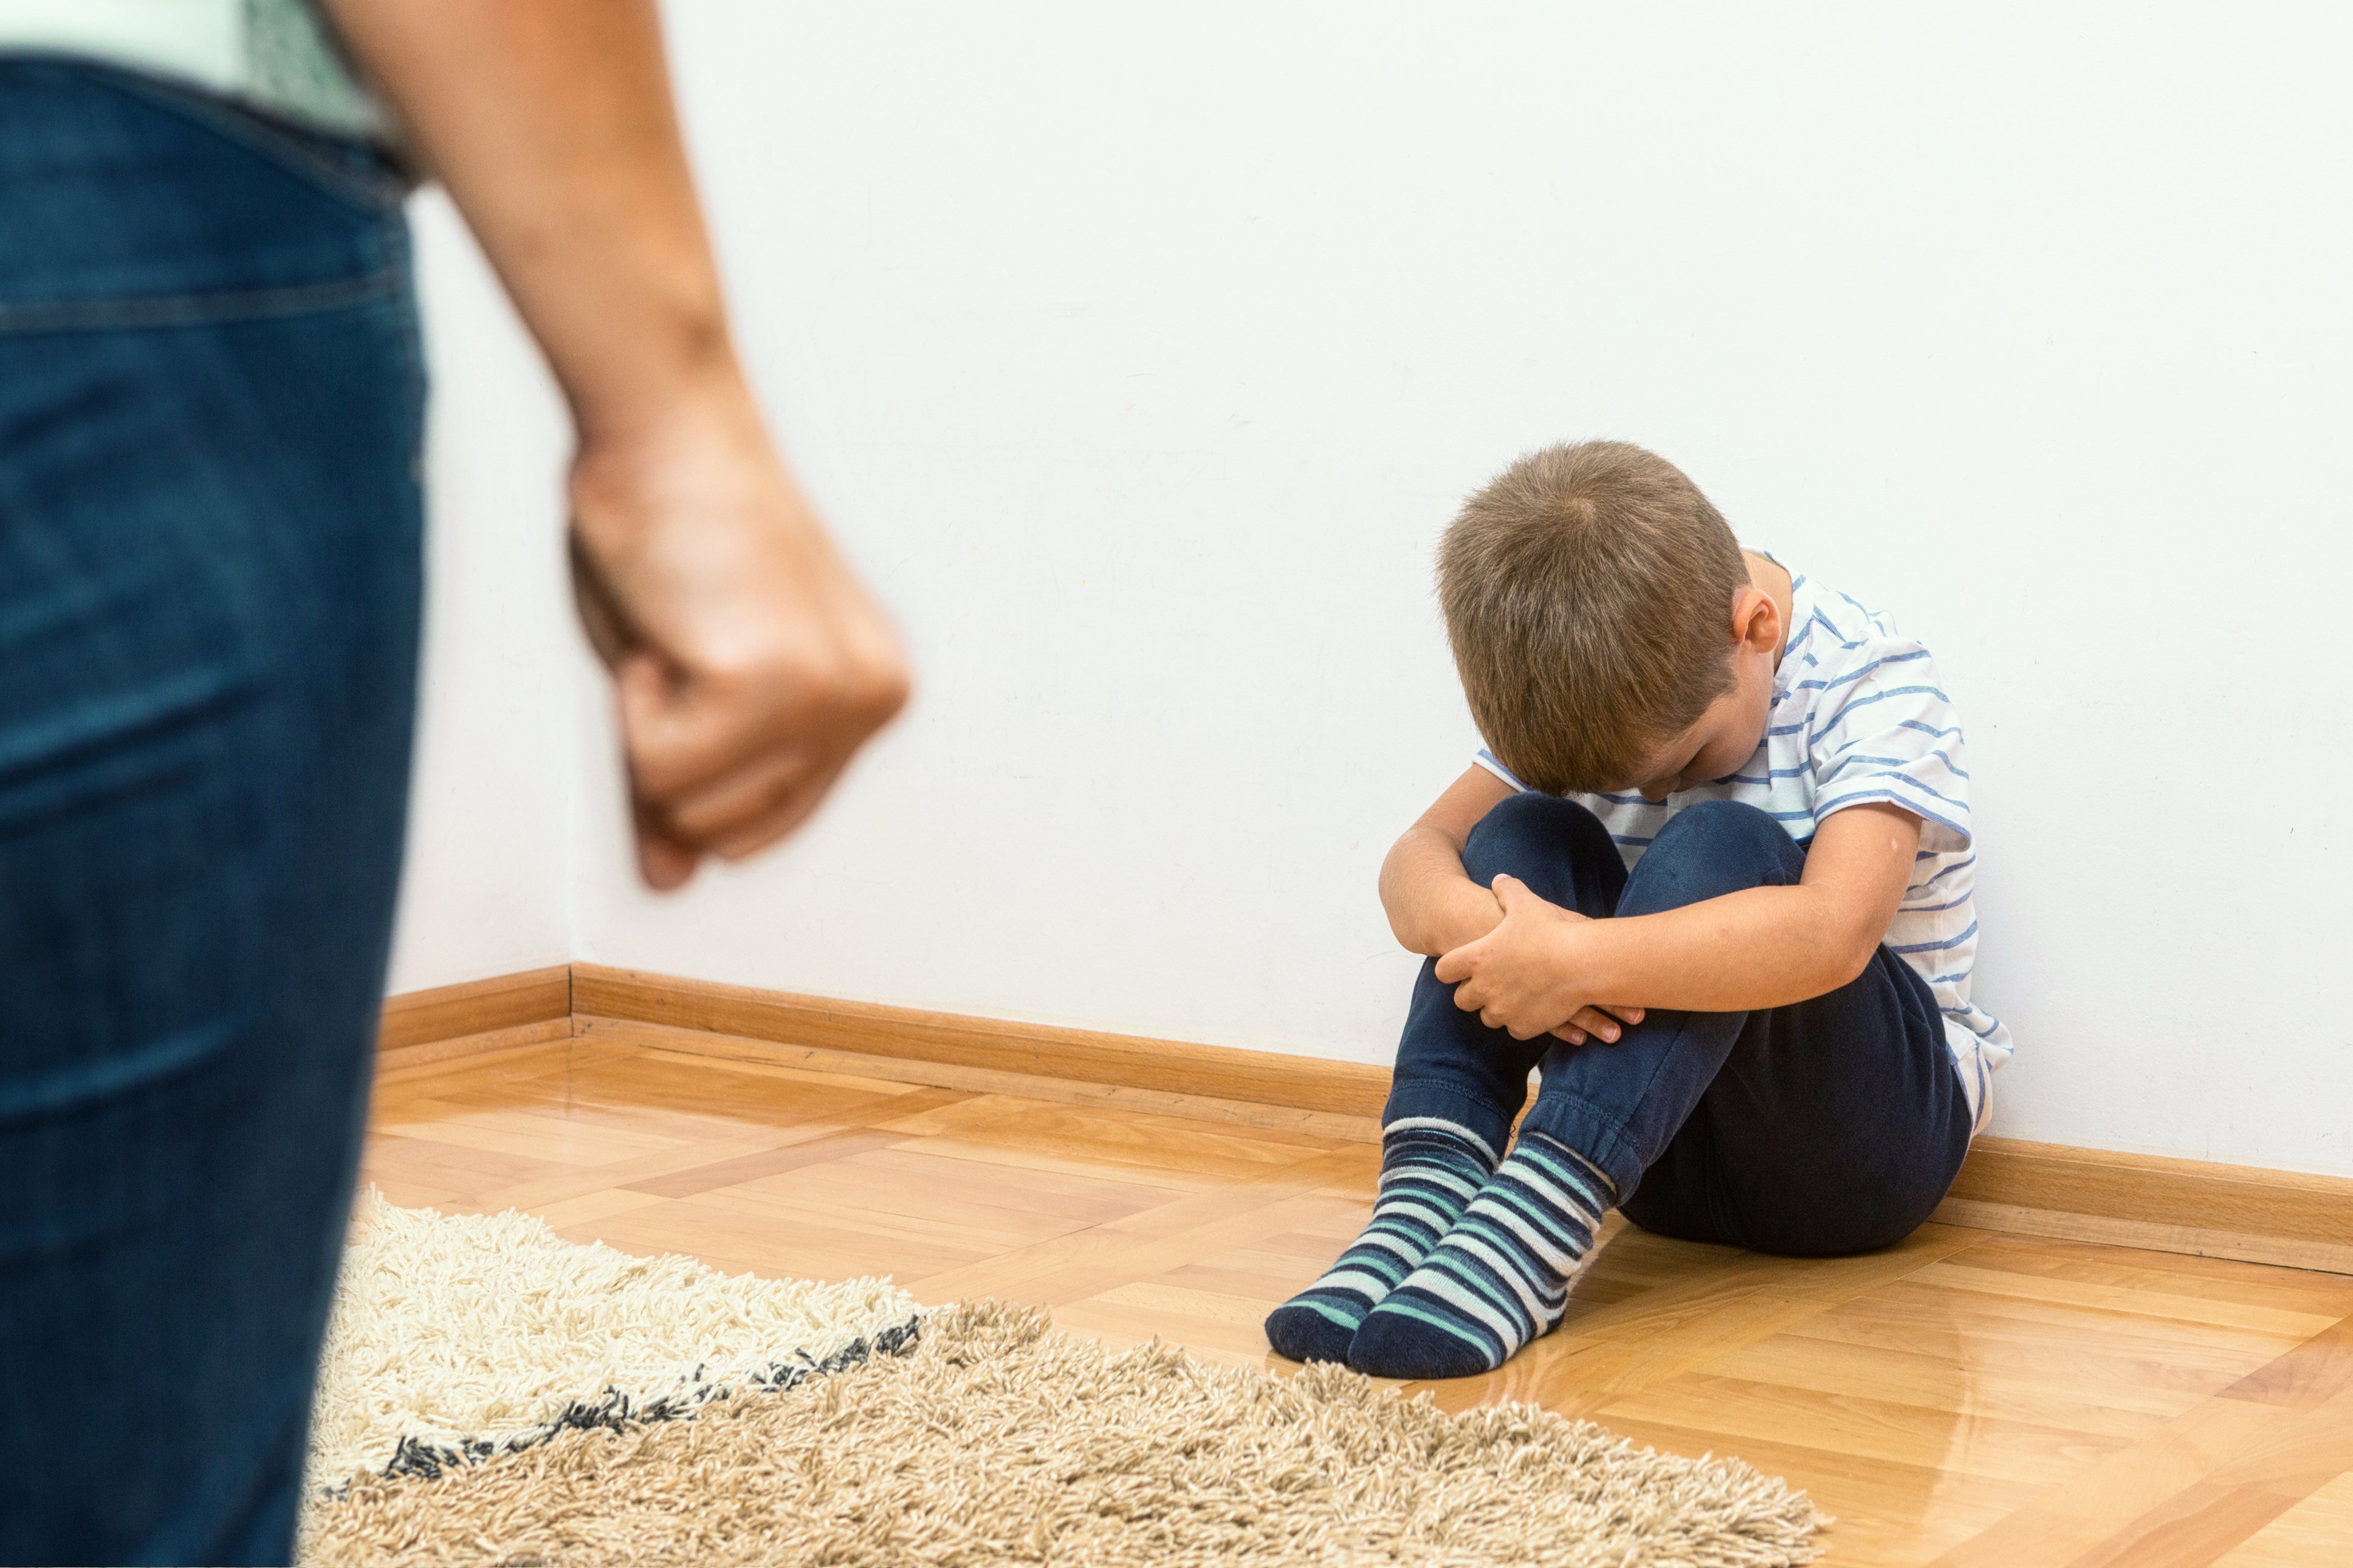 Junge kauert auf dem Boden | Quelle: Shutterstock